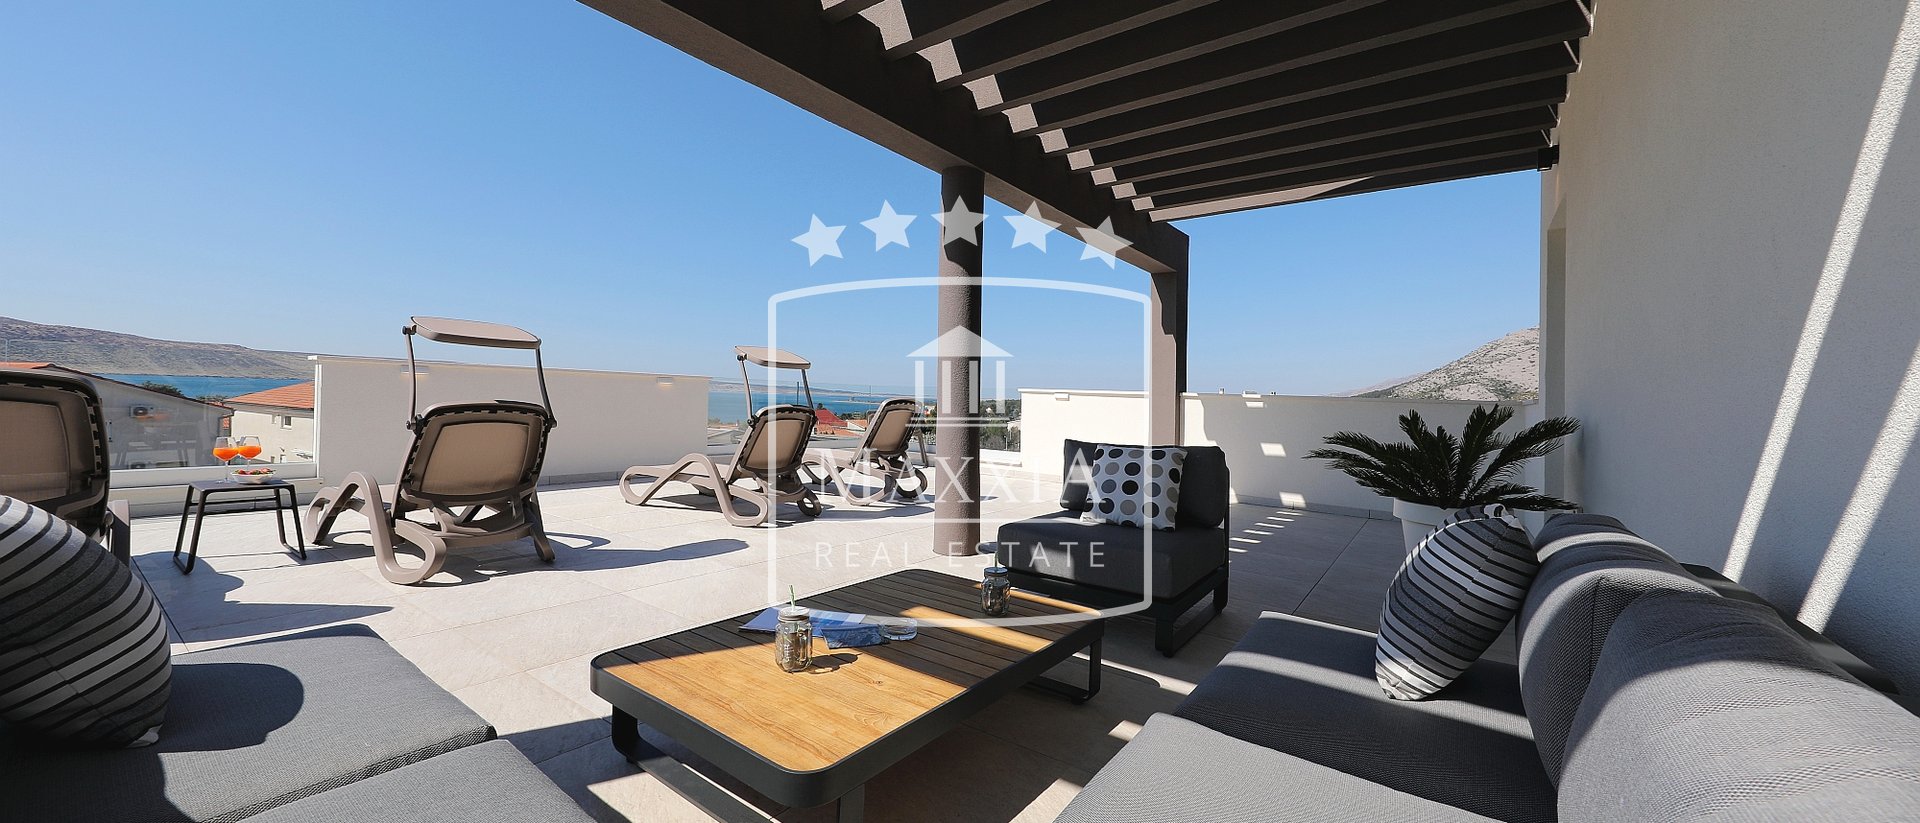 Seline - höchst modern eingerichtete Vila mit Swimmingpool 477m2! 4 apartments! 830000 €